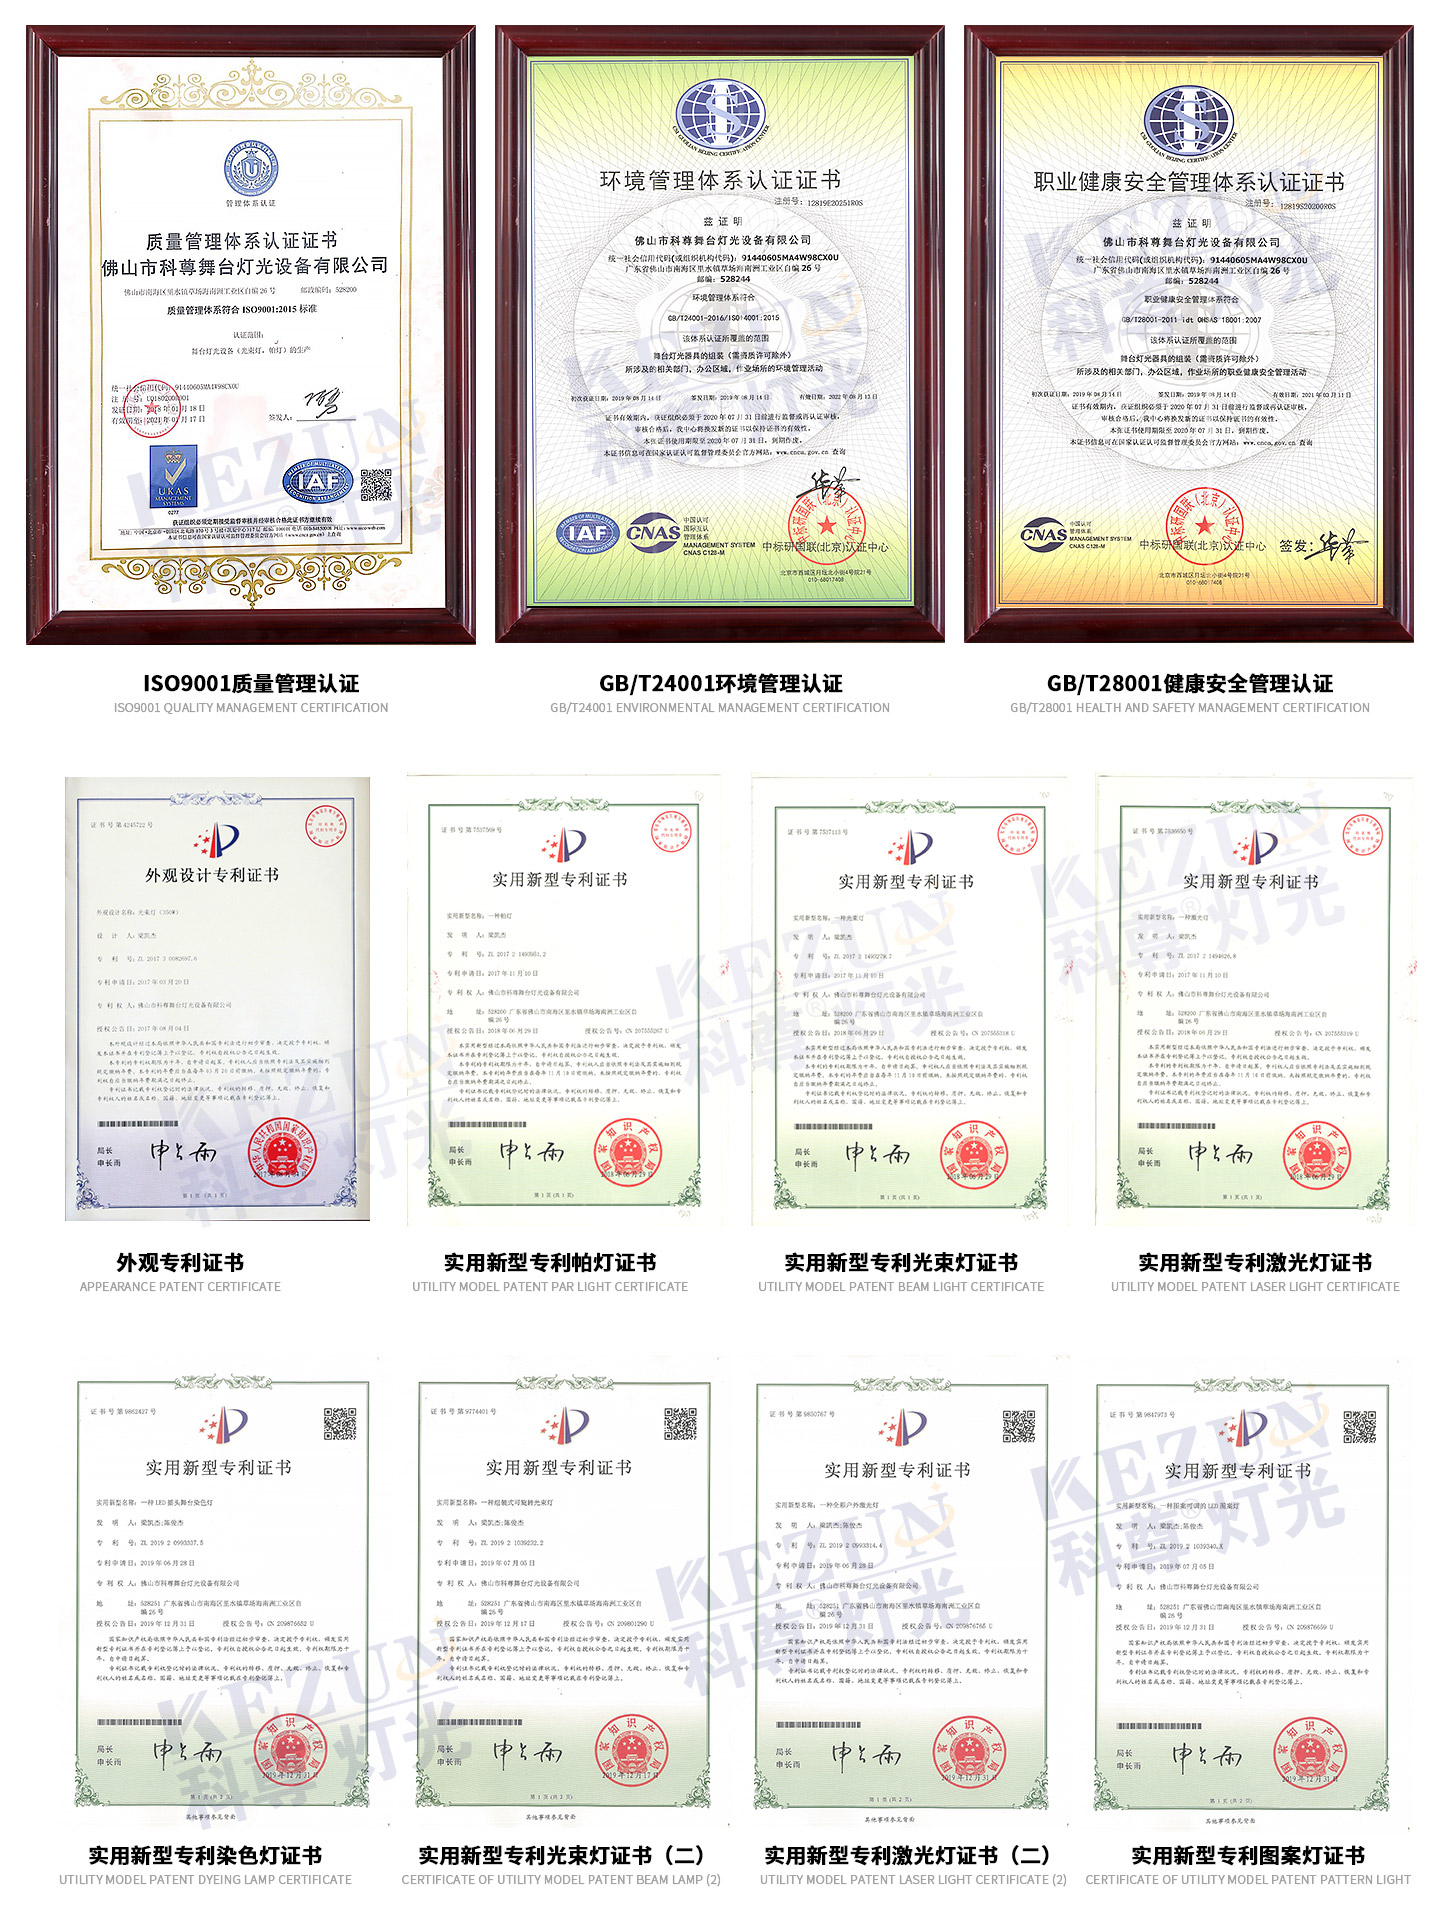 凯发k8国际娱乐荣誉资质证书